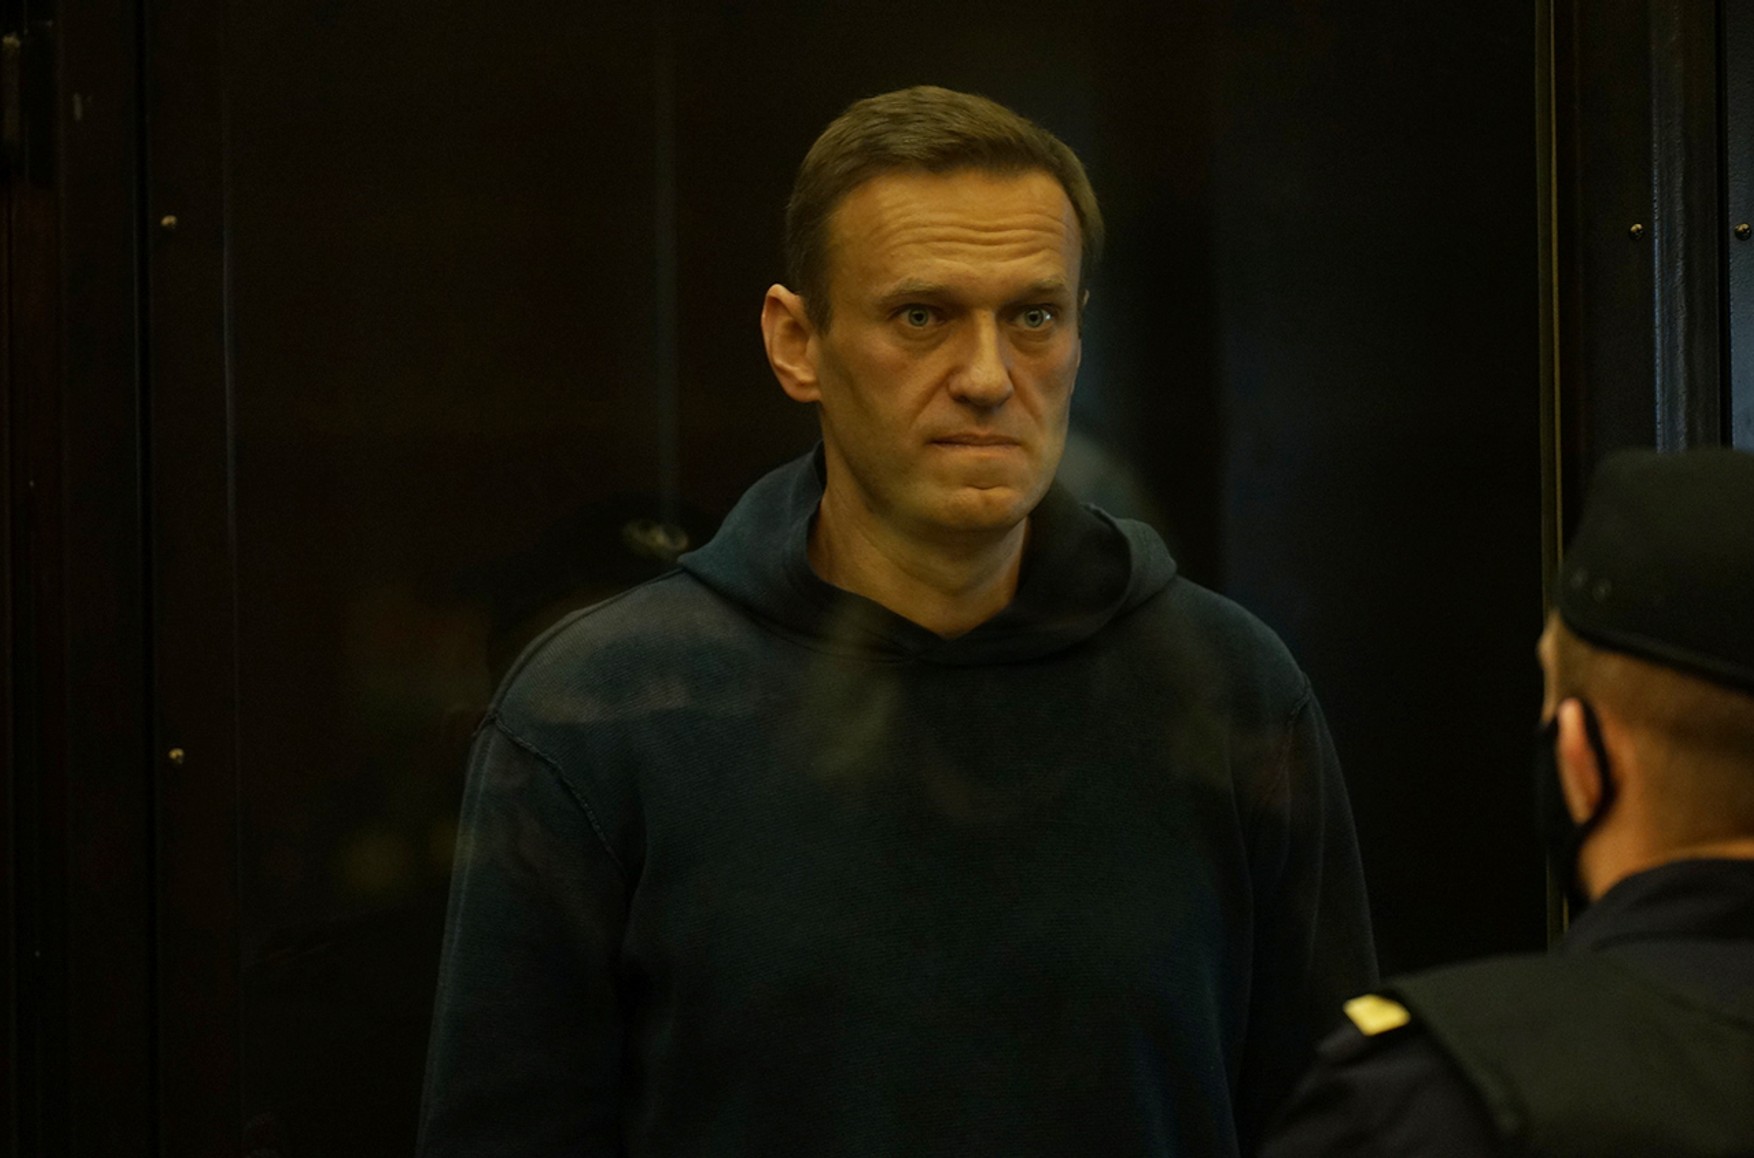 Олексію Навальному не проводять вітамінну терапію, як заявляла ФСВП - адвокат